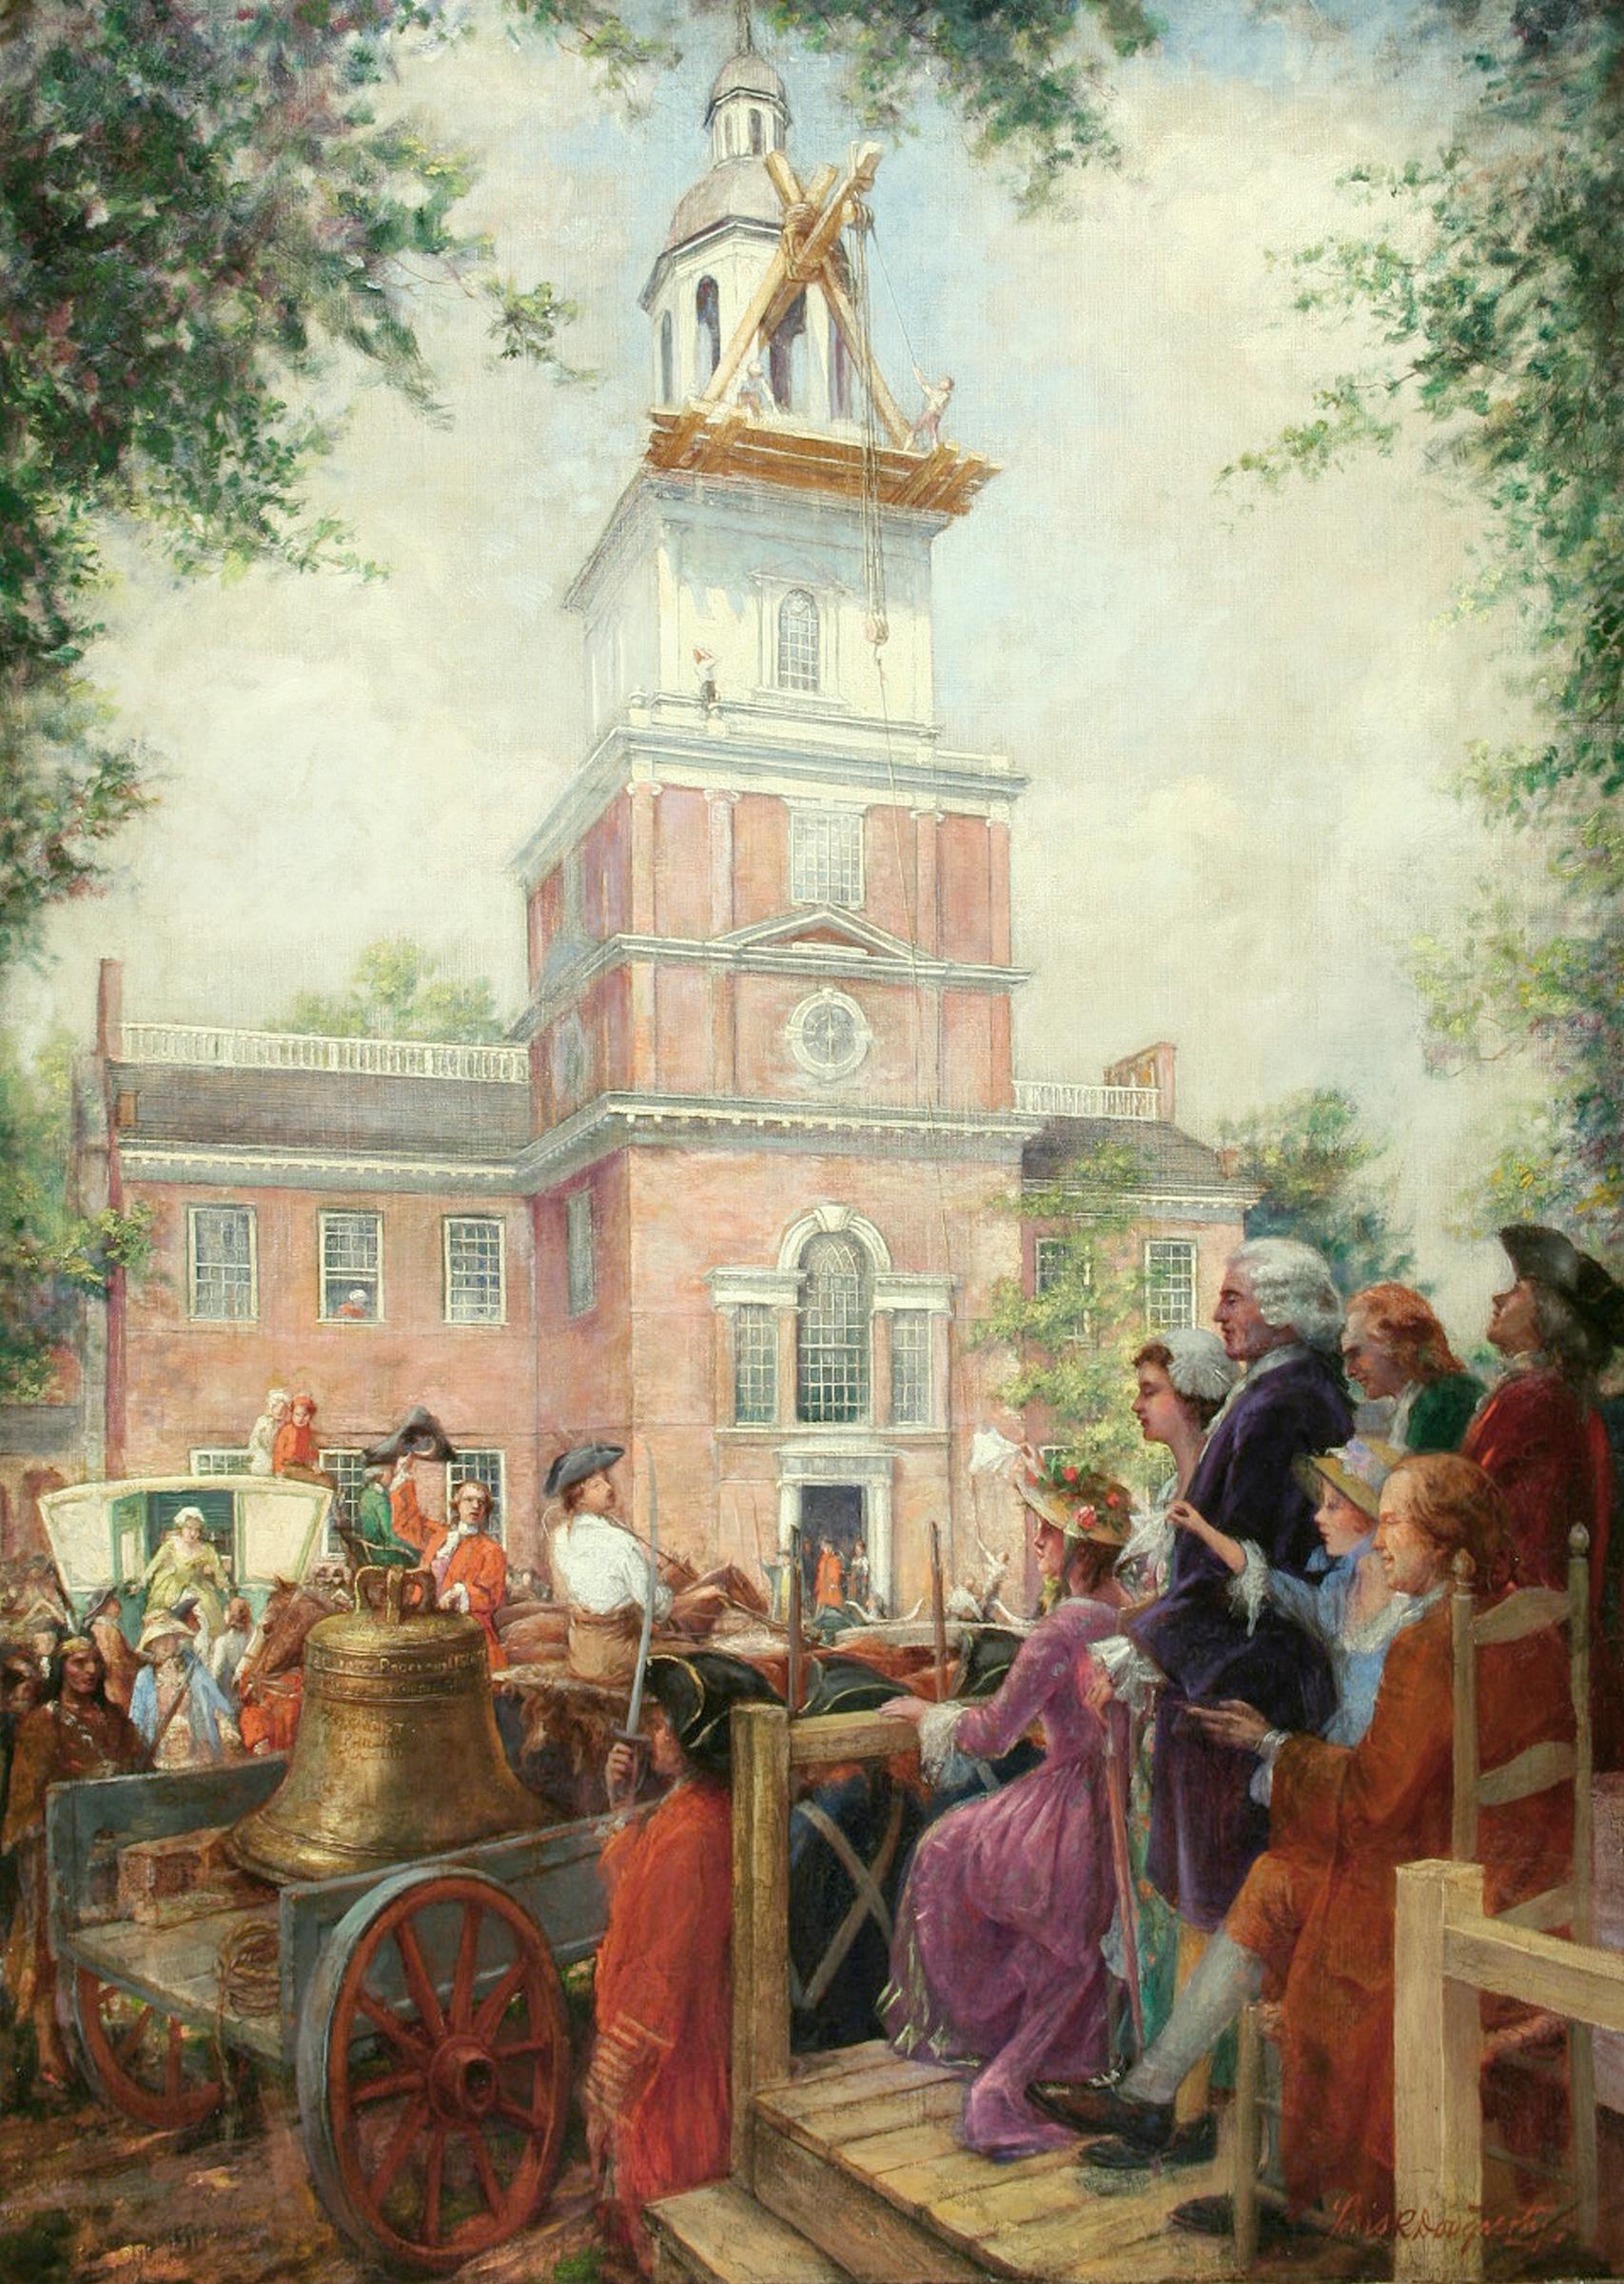 Installation der Freiheitsglocke in der Independence Hall, Philadelphia – Painting von Louis Roberts Dougherty 